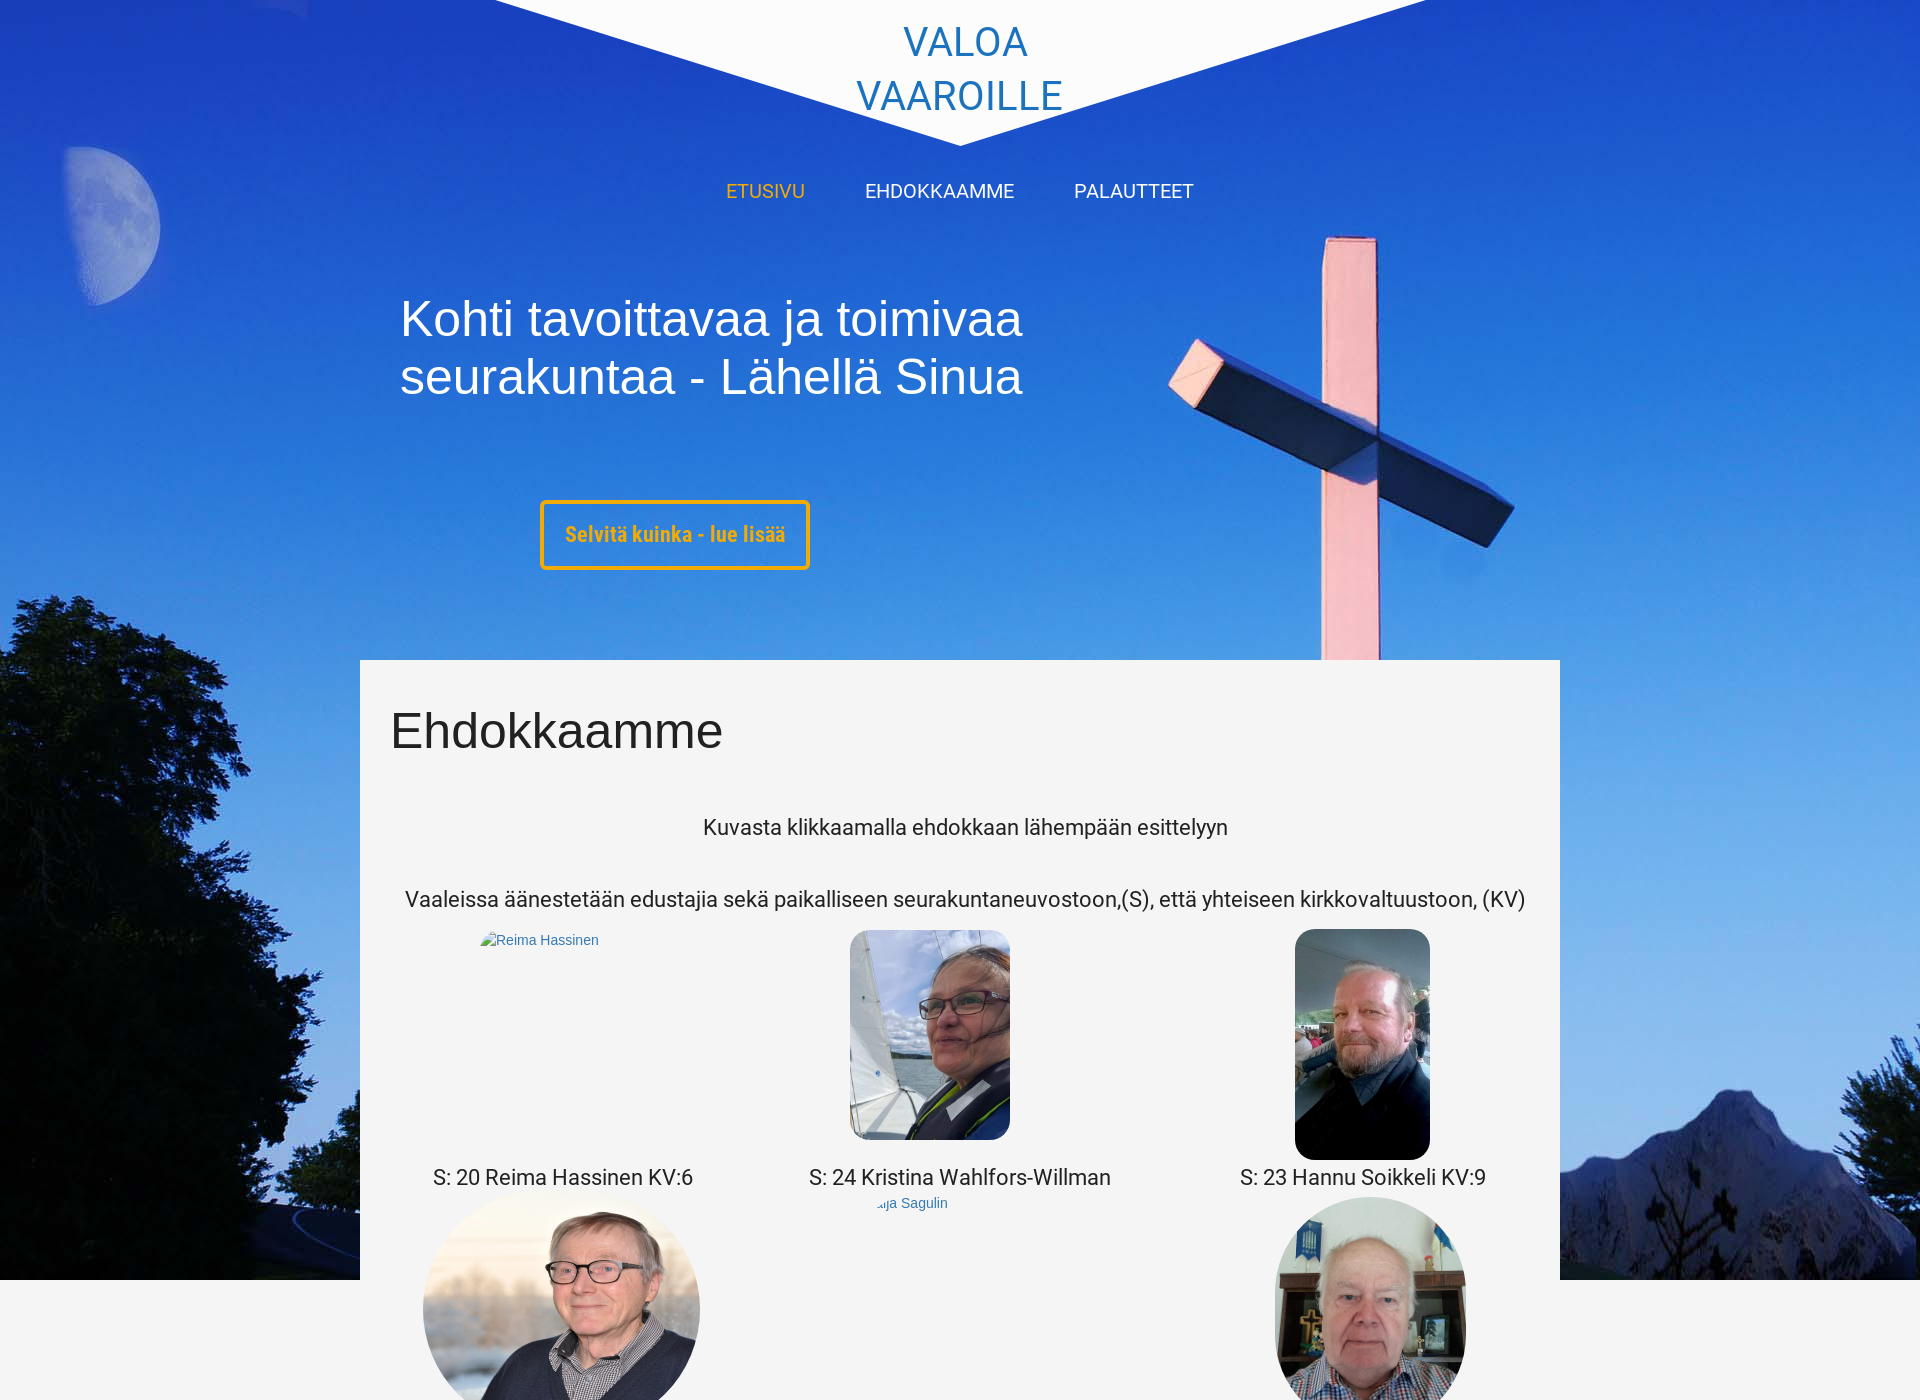 Näyttökuva valoavaaroille.fi